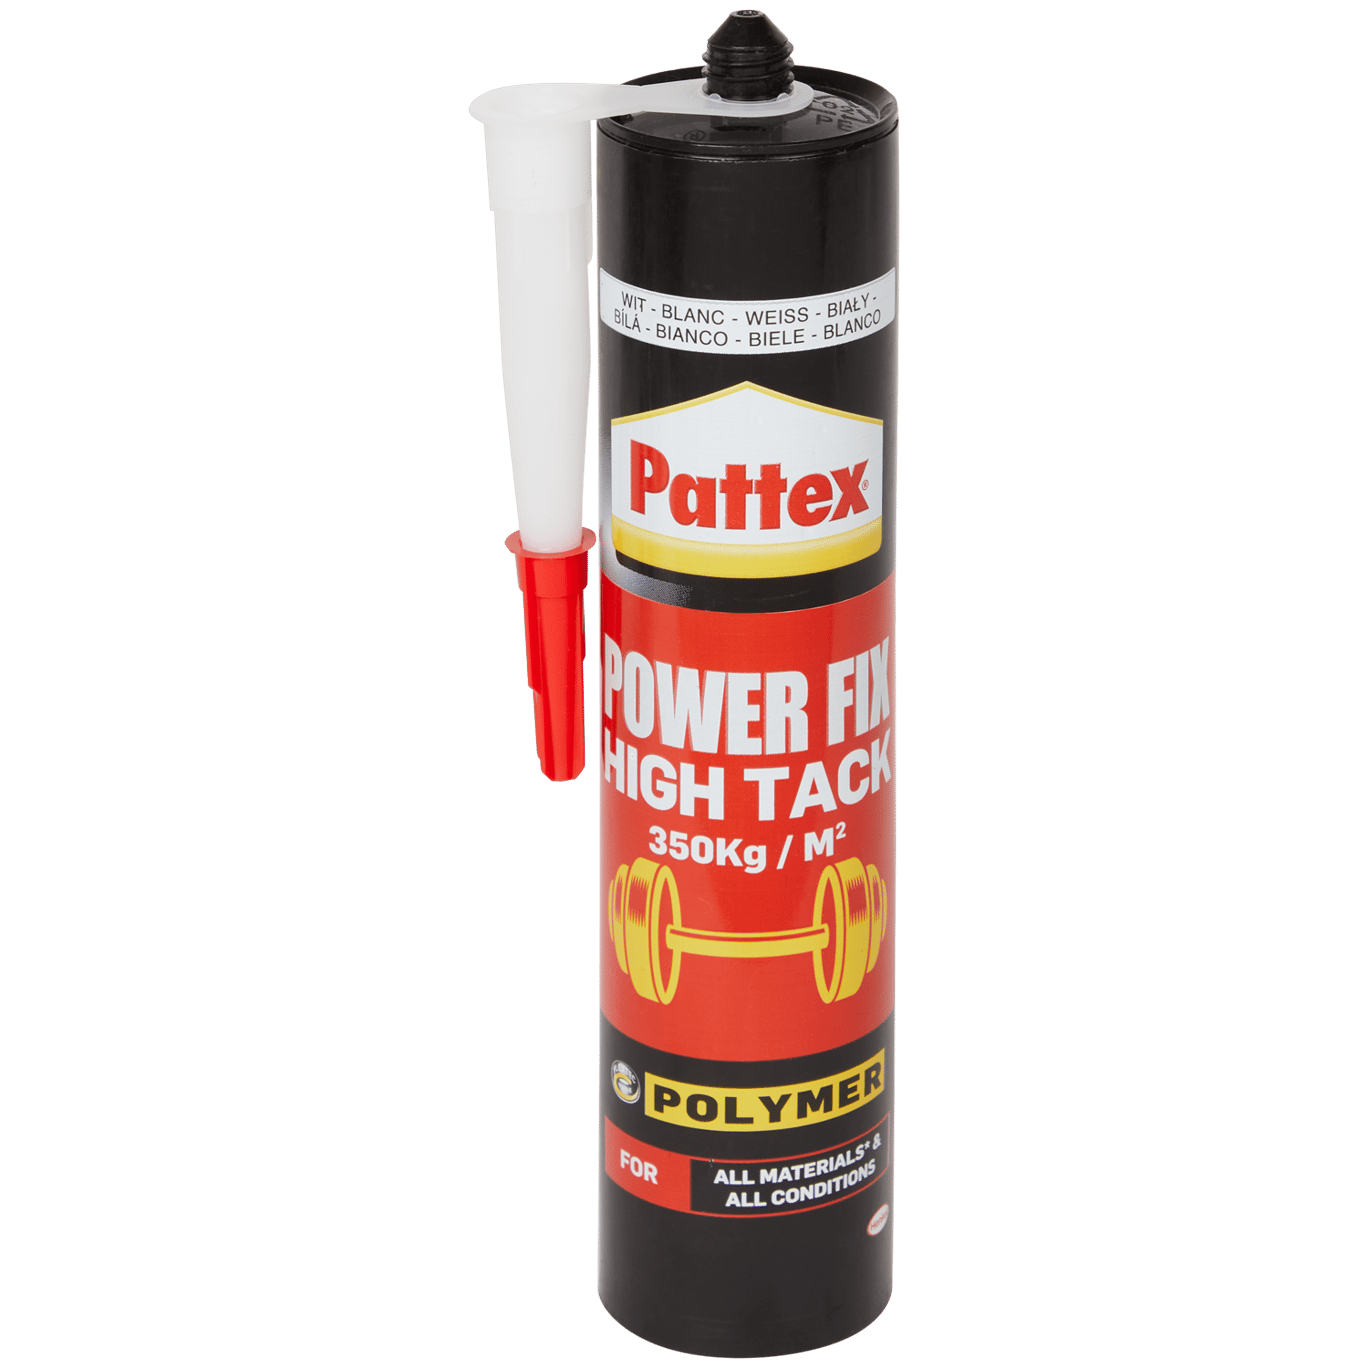 Colla di montaggio Pattex Power Fix High Tack